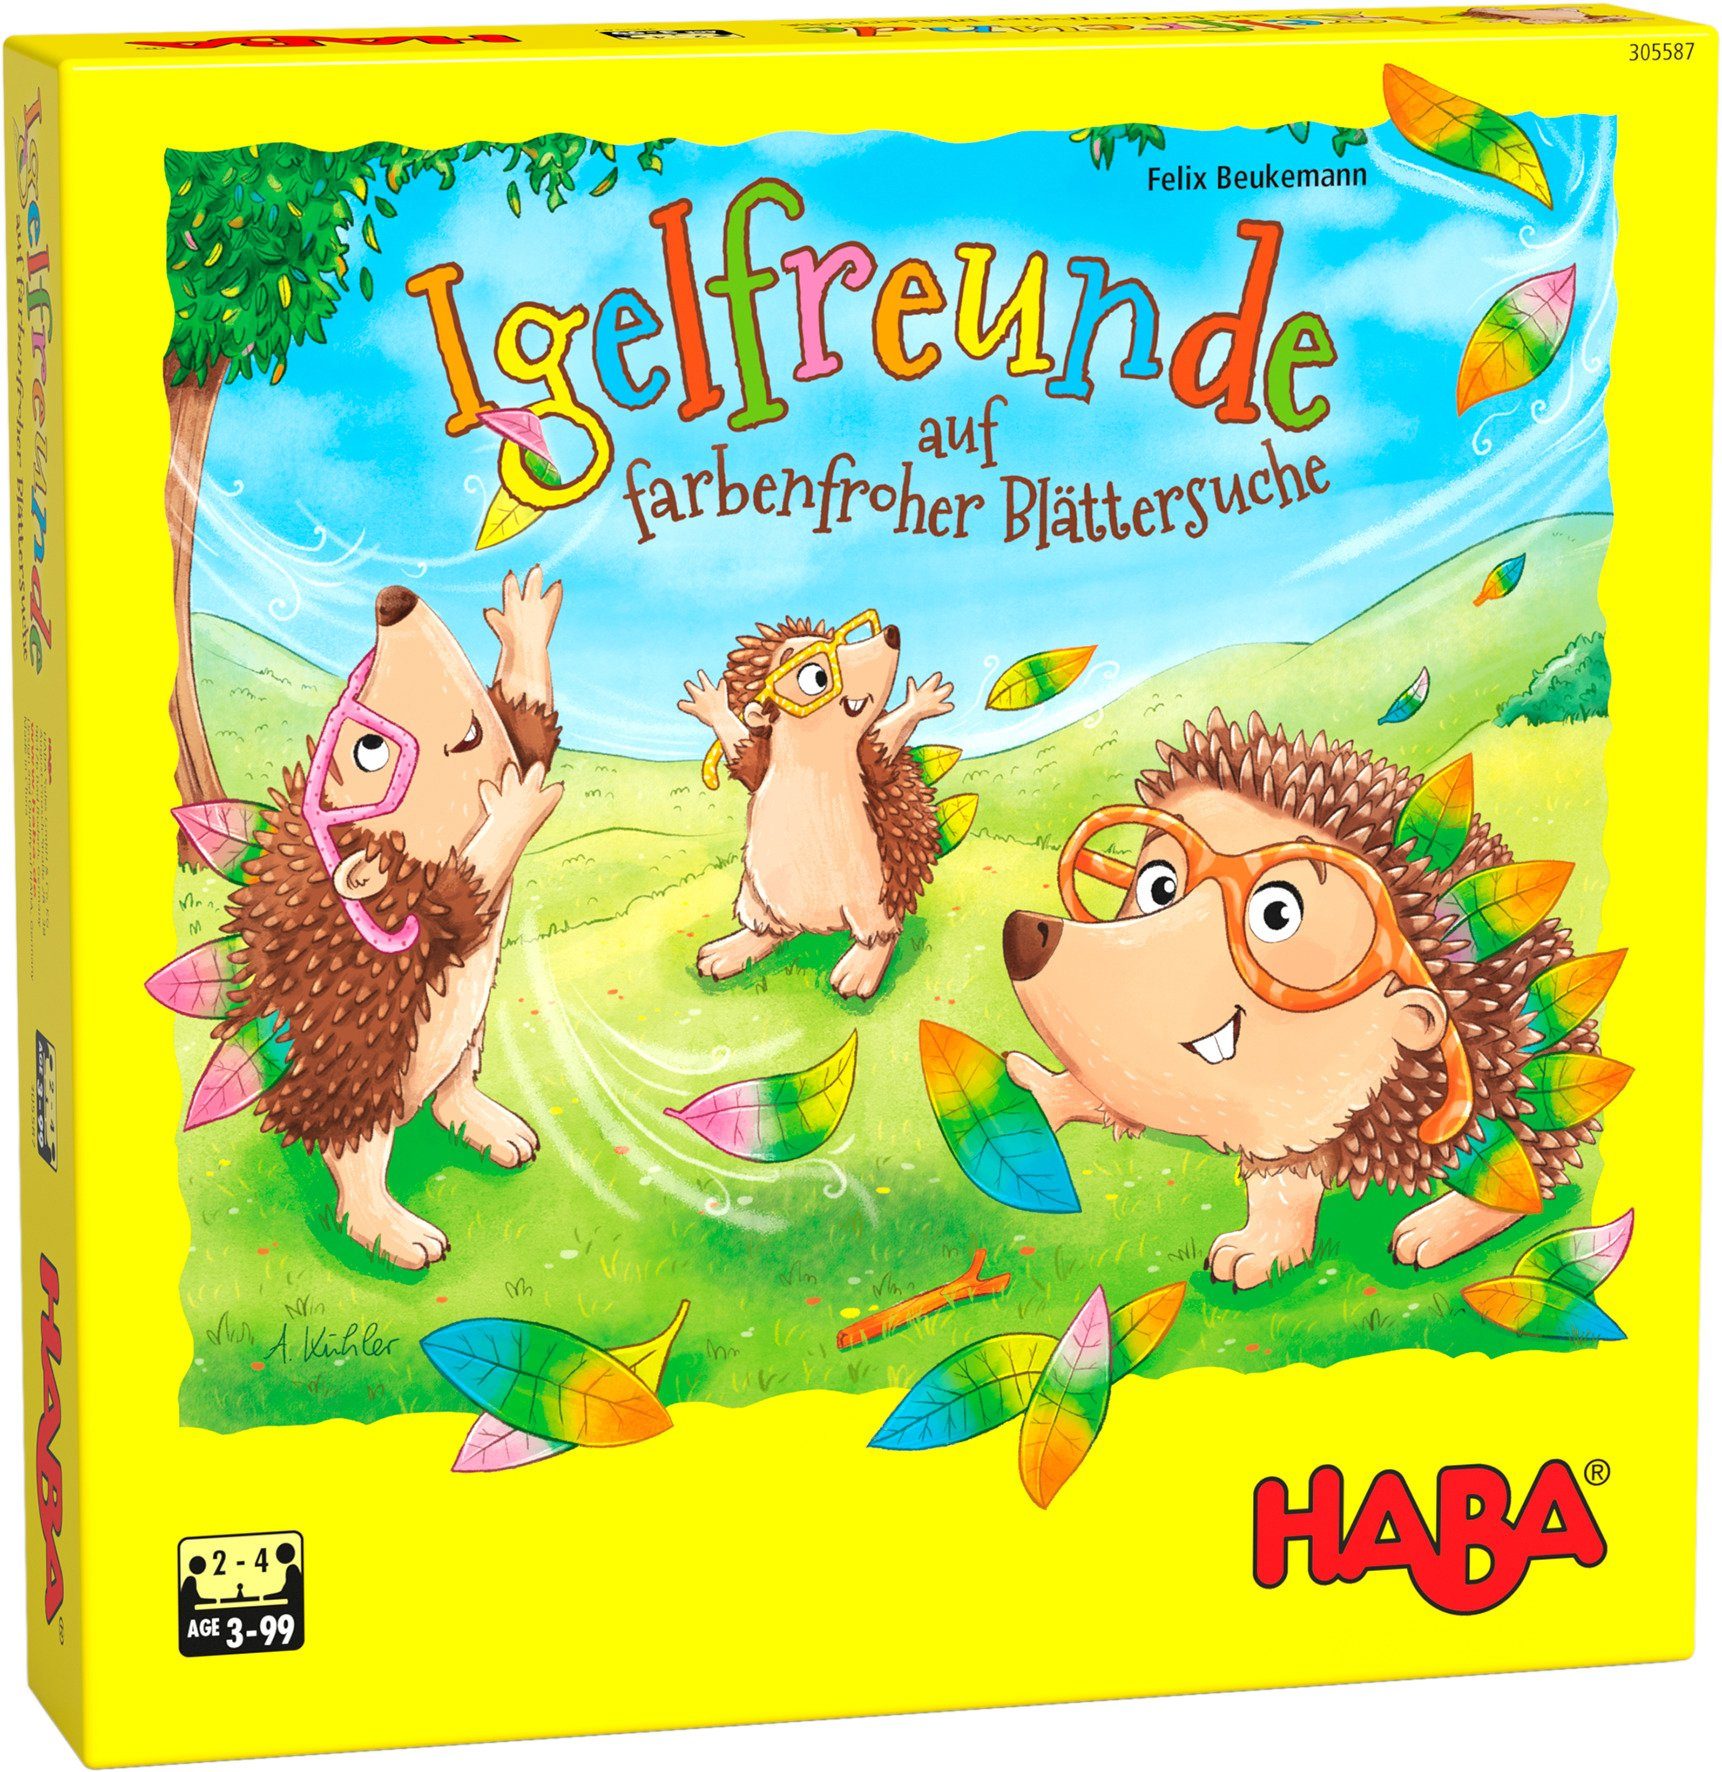 Haba Spiel, Würfelspiel Igelfreunde, Made in Germany